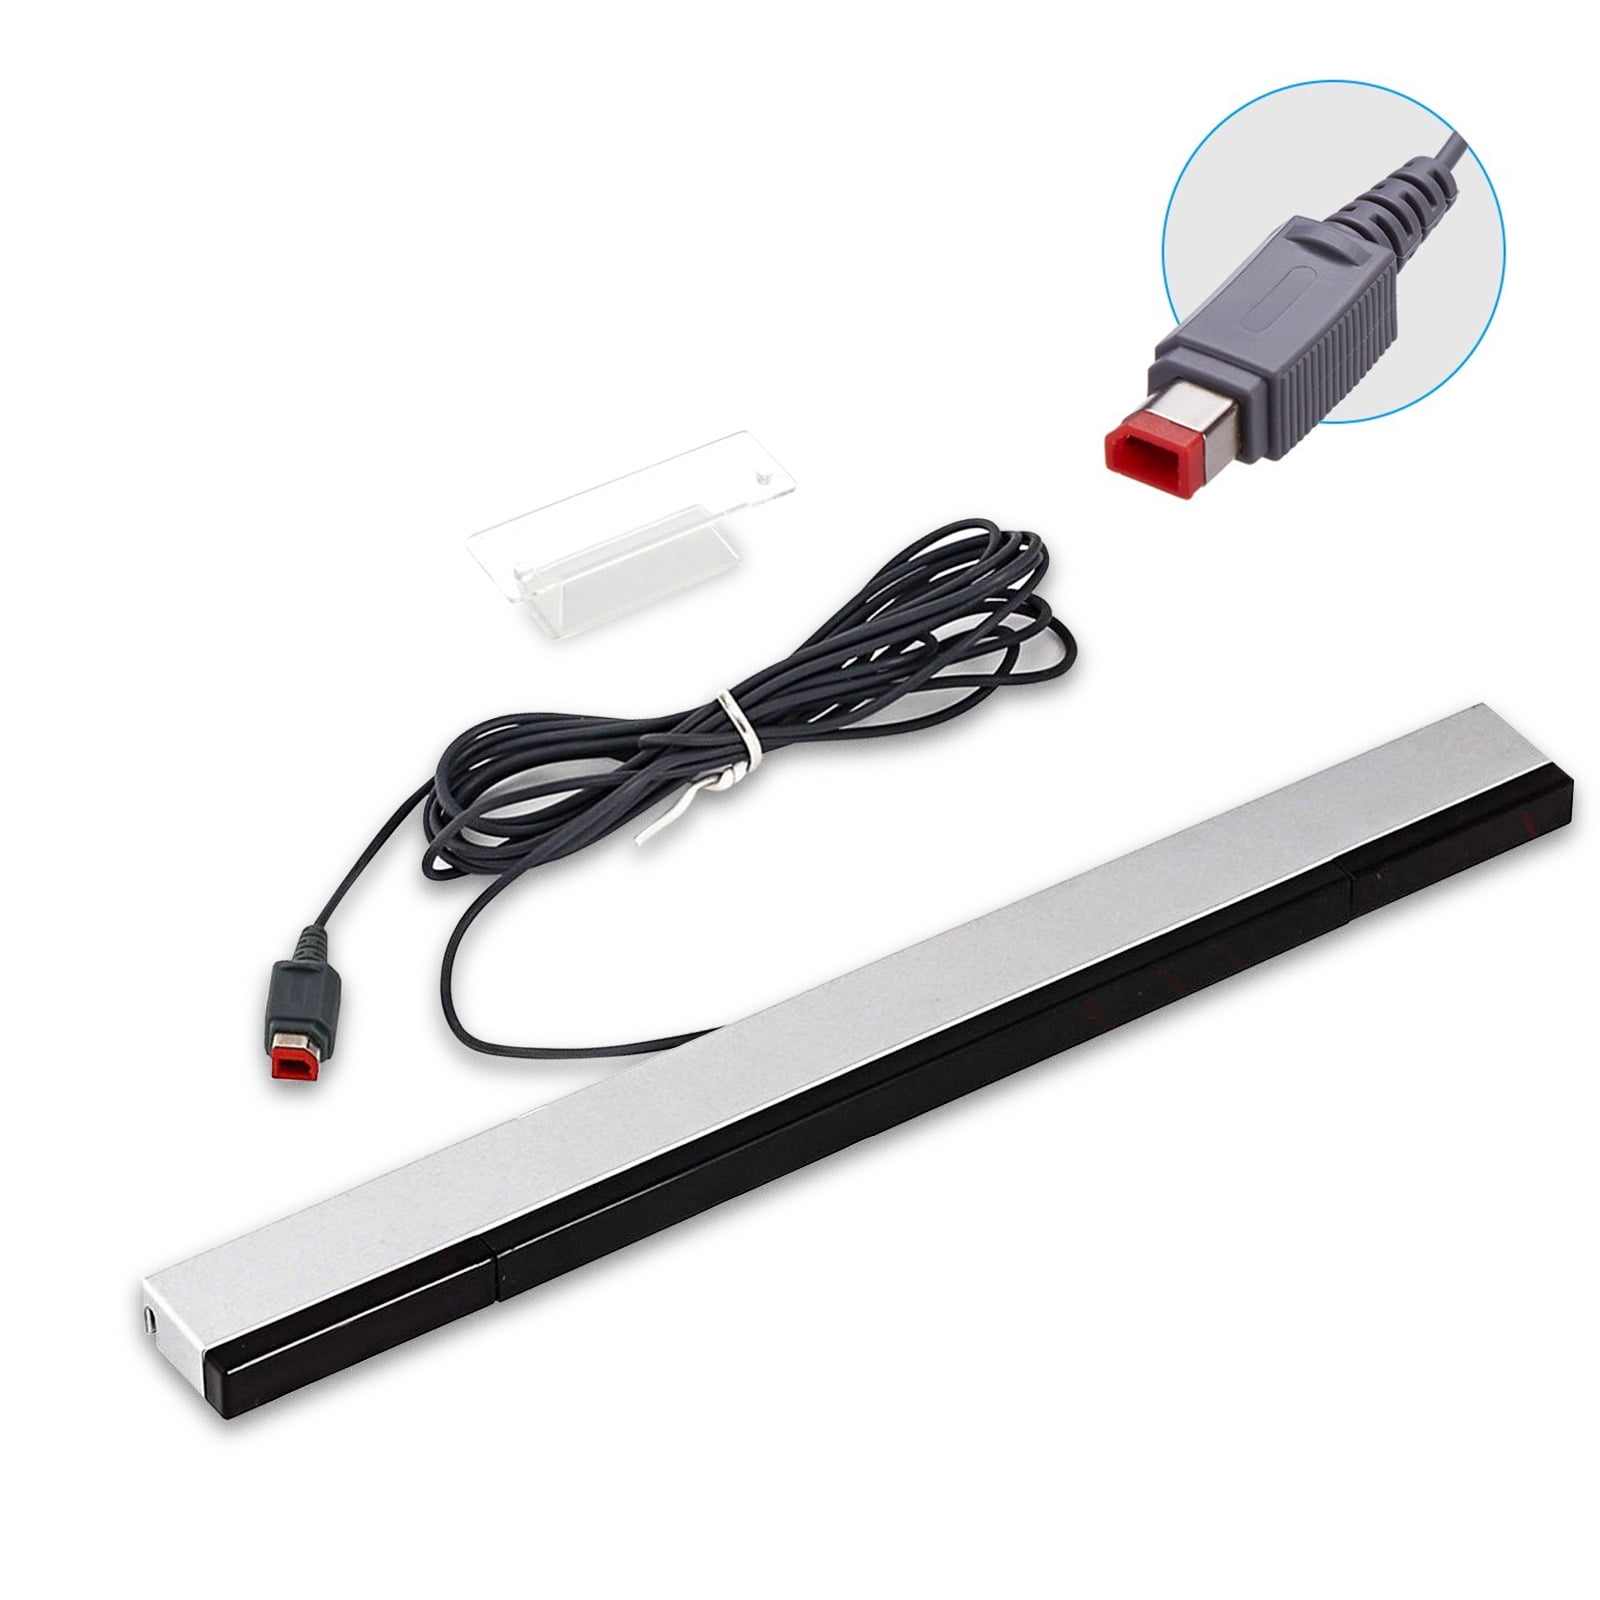 ongebruikt Integreren domineren TSV Wired Sensor Bar Fit for Nintendo Wii, Wii U Console, Wired IR Ray  Receiver Sensor Bar Fit for Nintendo Wii, Wii U, Wired Infrared Remote  Motion Sensor Bar for Nintendo Wii